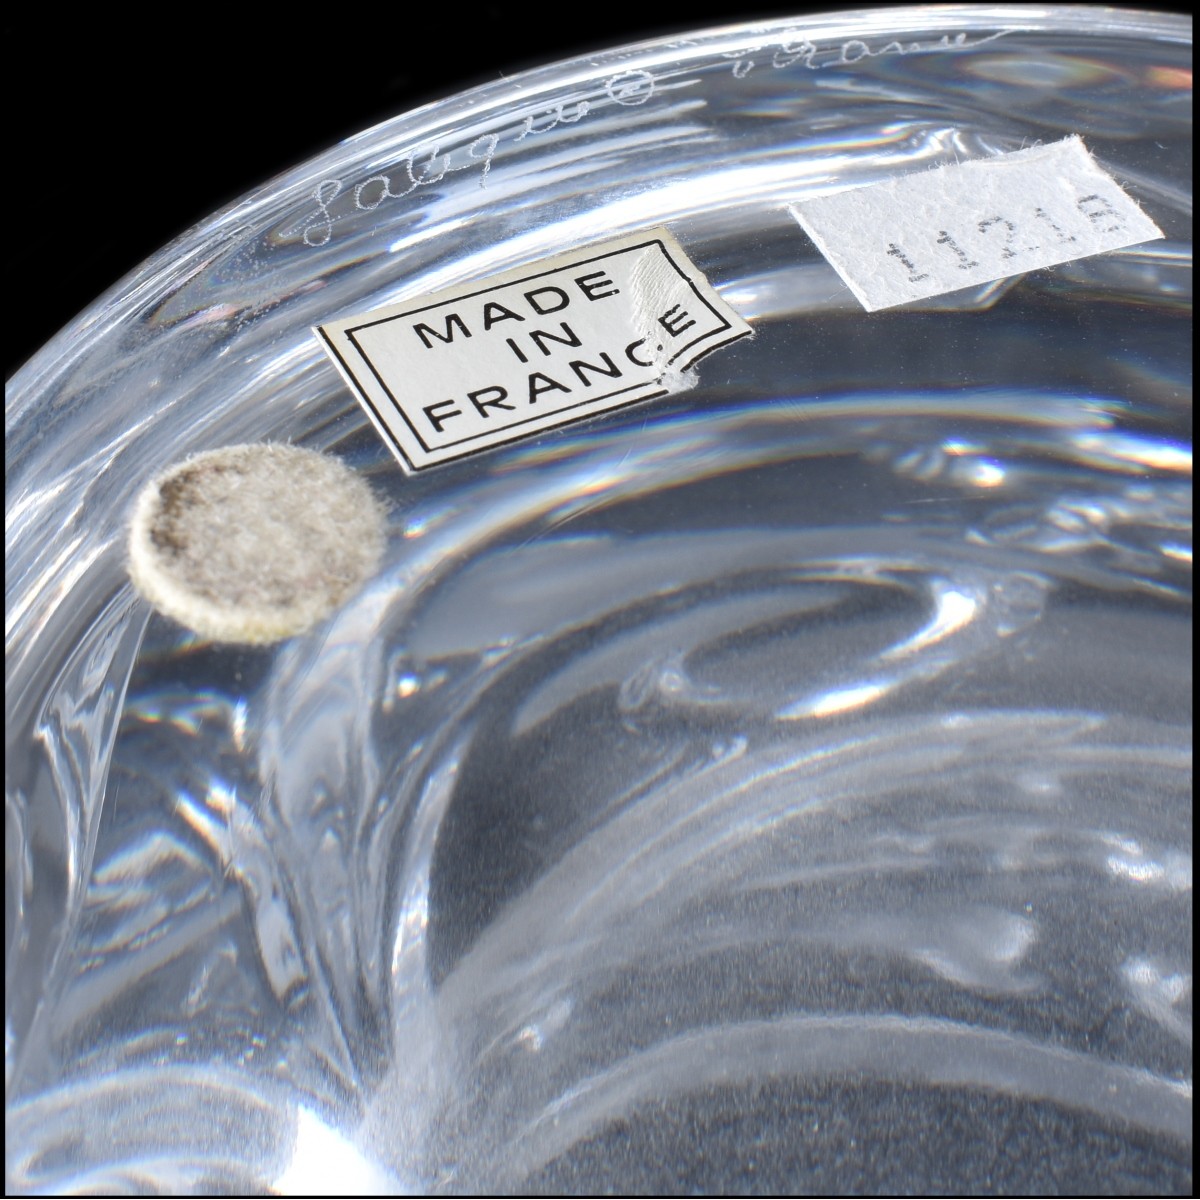 Lalique Crystal "Verone" Bowl